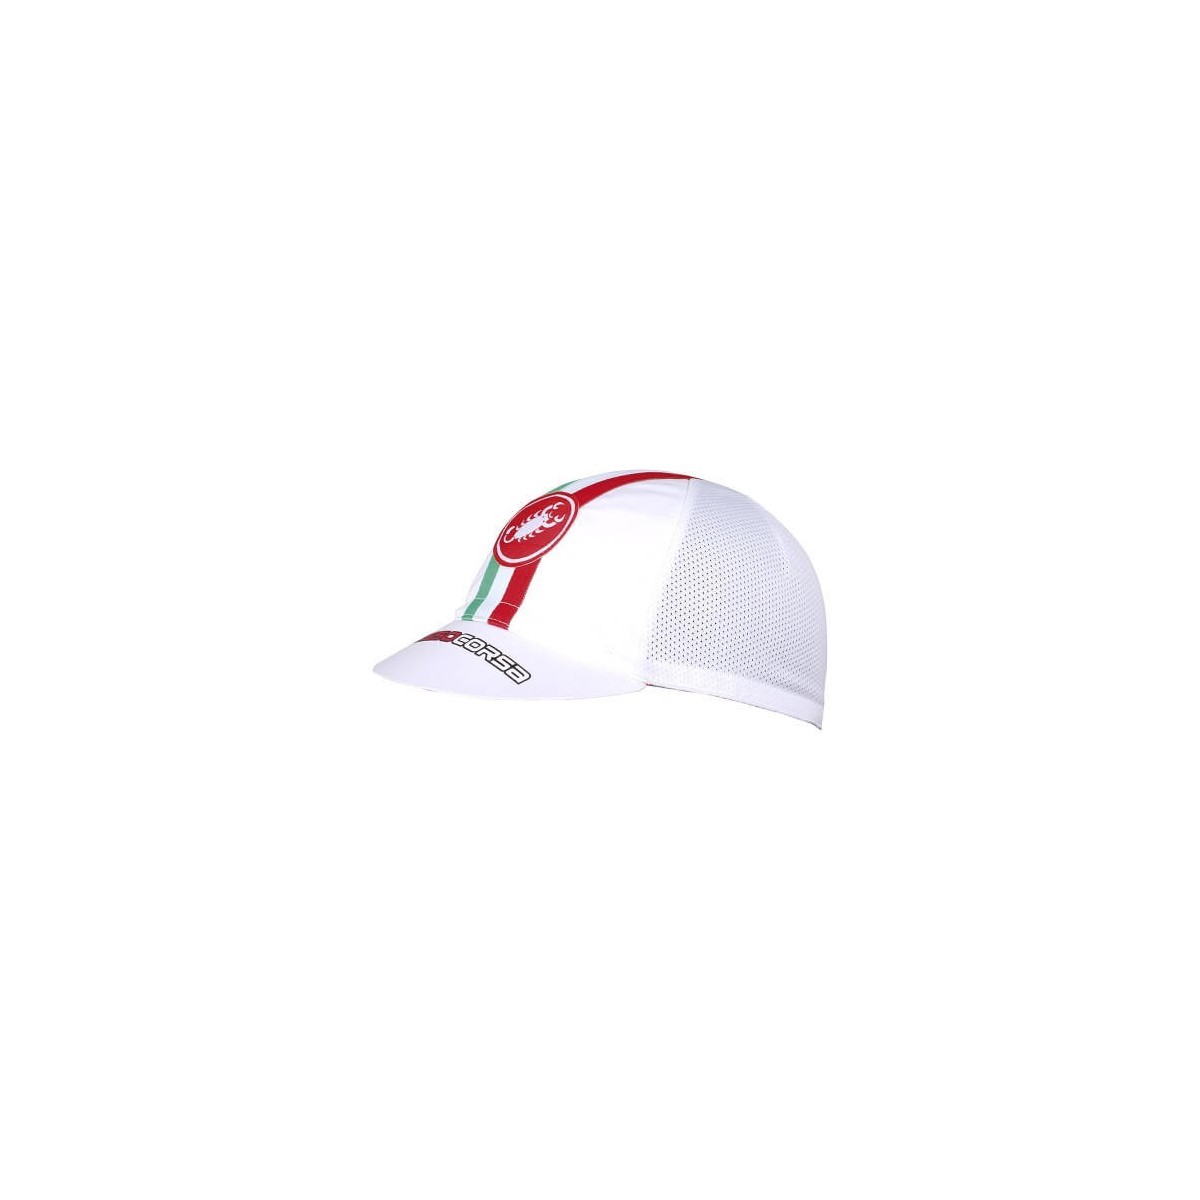 Stil A günstig Kaufen-Castelli Performance White Cap. Castelli Performance White Cap <![CDATA[Es besteht aus einem hoch atmungsaktiven Material und eignet sich perfekt für einen lässigen Stil oder zum Tragen im Radsporttraining unter dem Helm.]]>. 